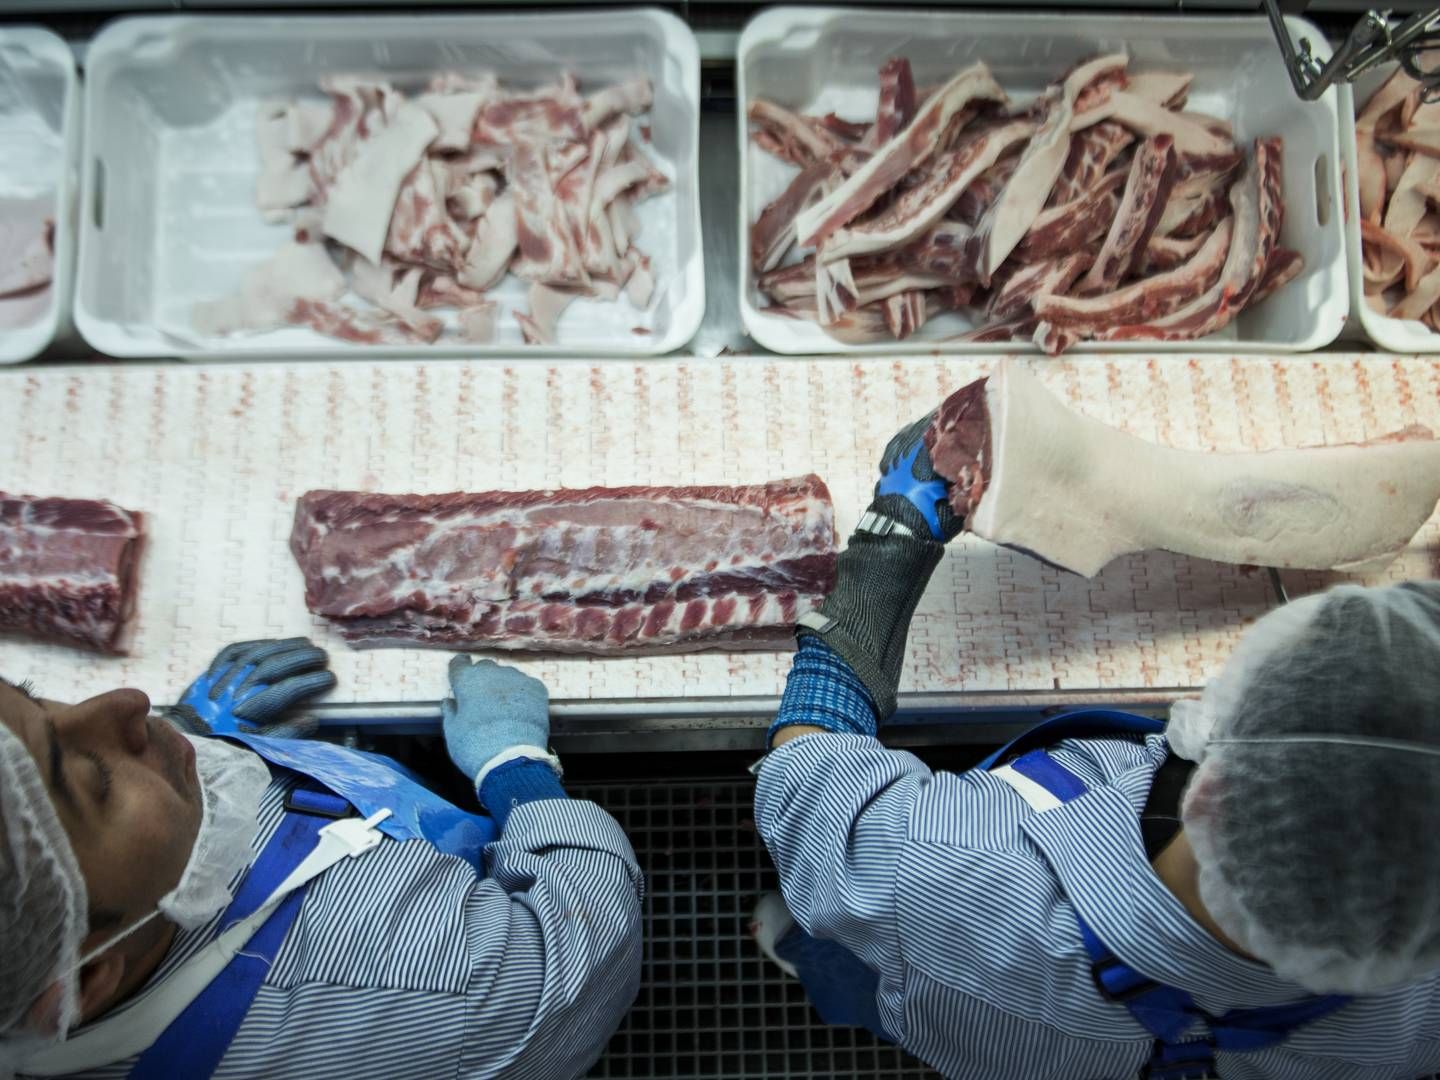 Udbrud af svinepest har kostet 200 mio. grise livet i Kina. Det har udløst ekstreme prisudsving, som øger risikoen for tab i danske handelshuse. | Foto: Cicilie S. Andersen / Ritzau Scanpix